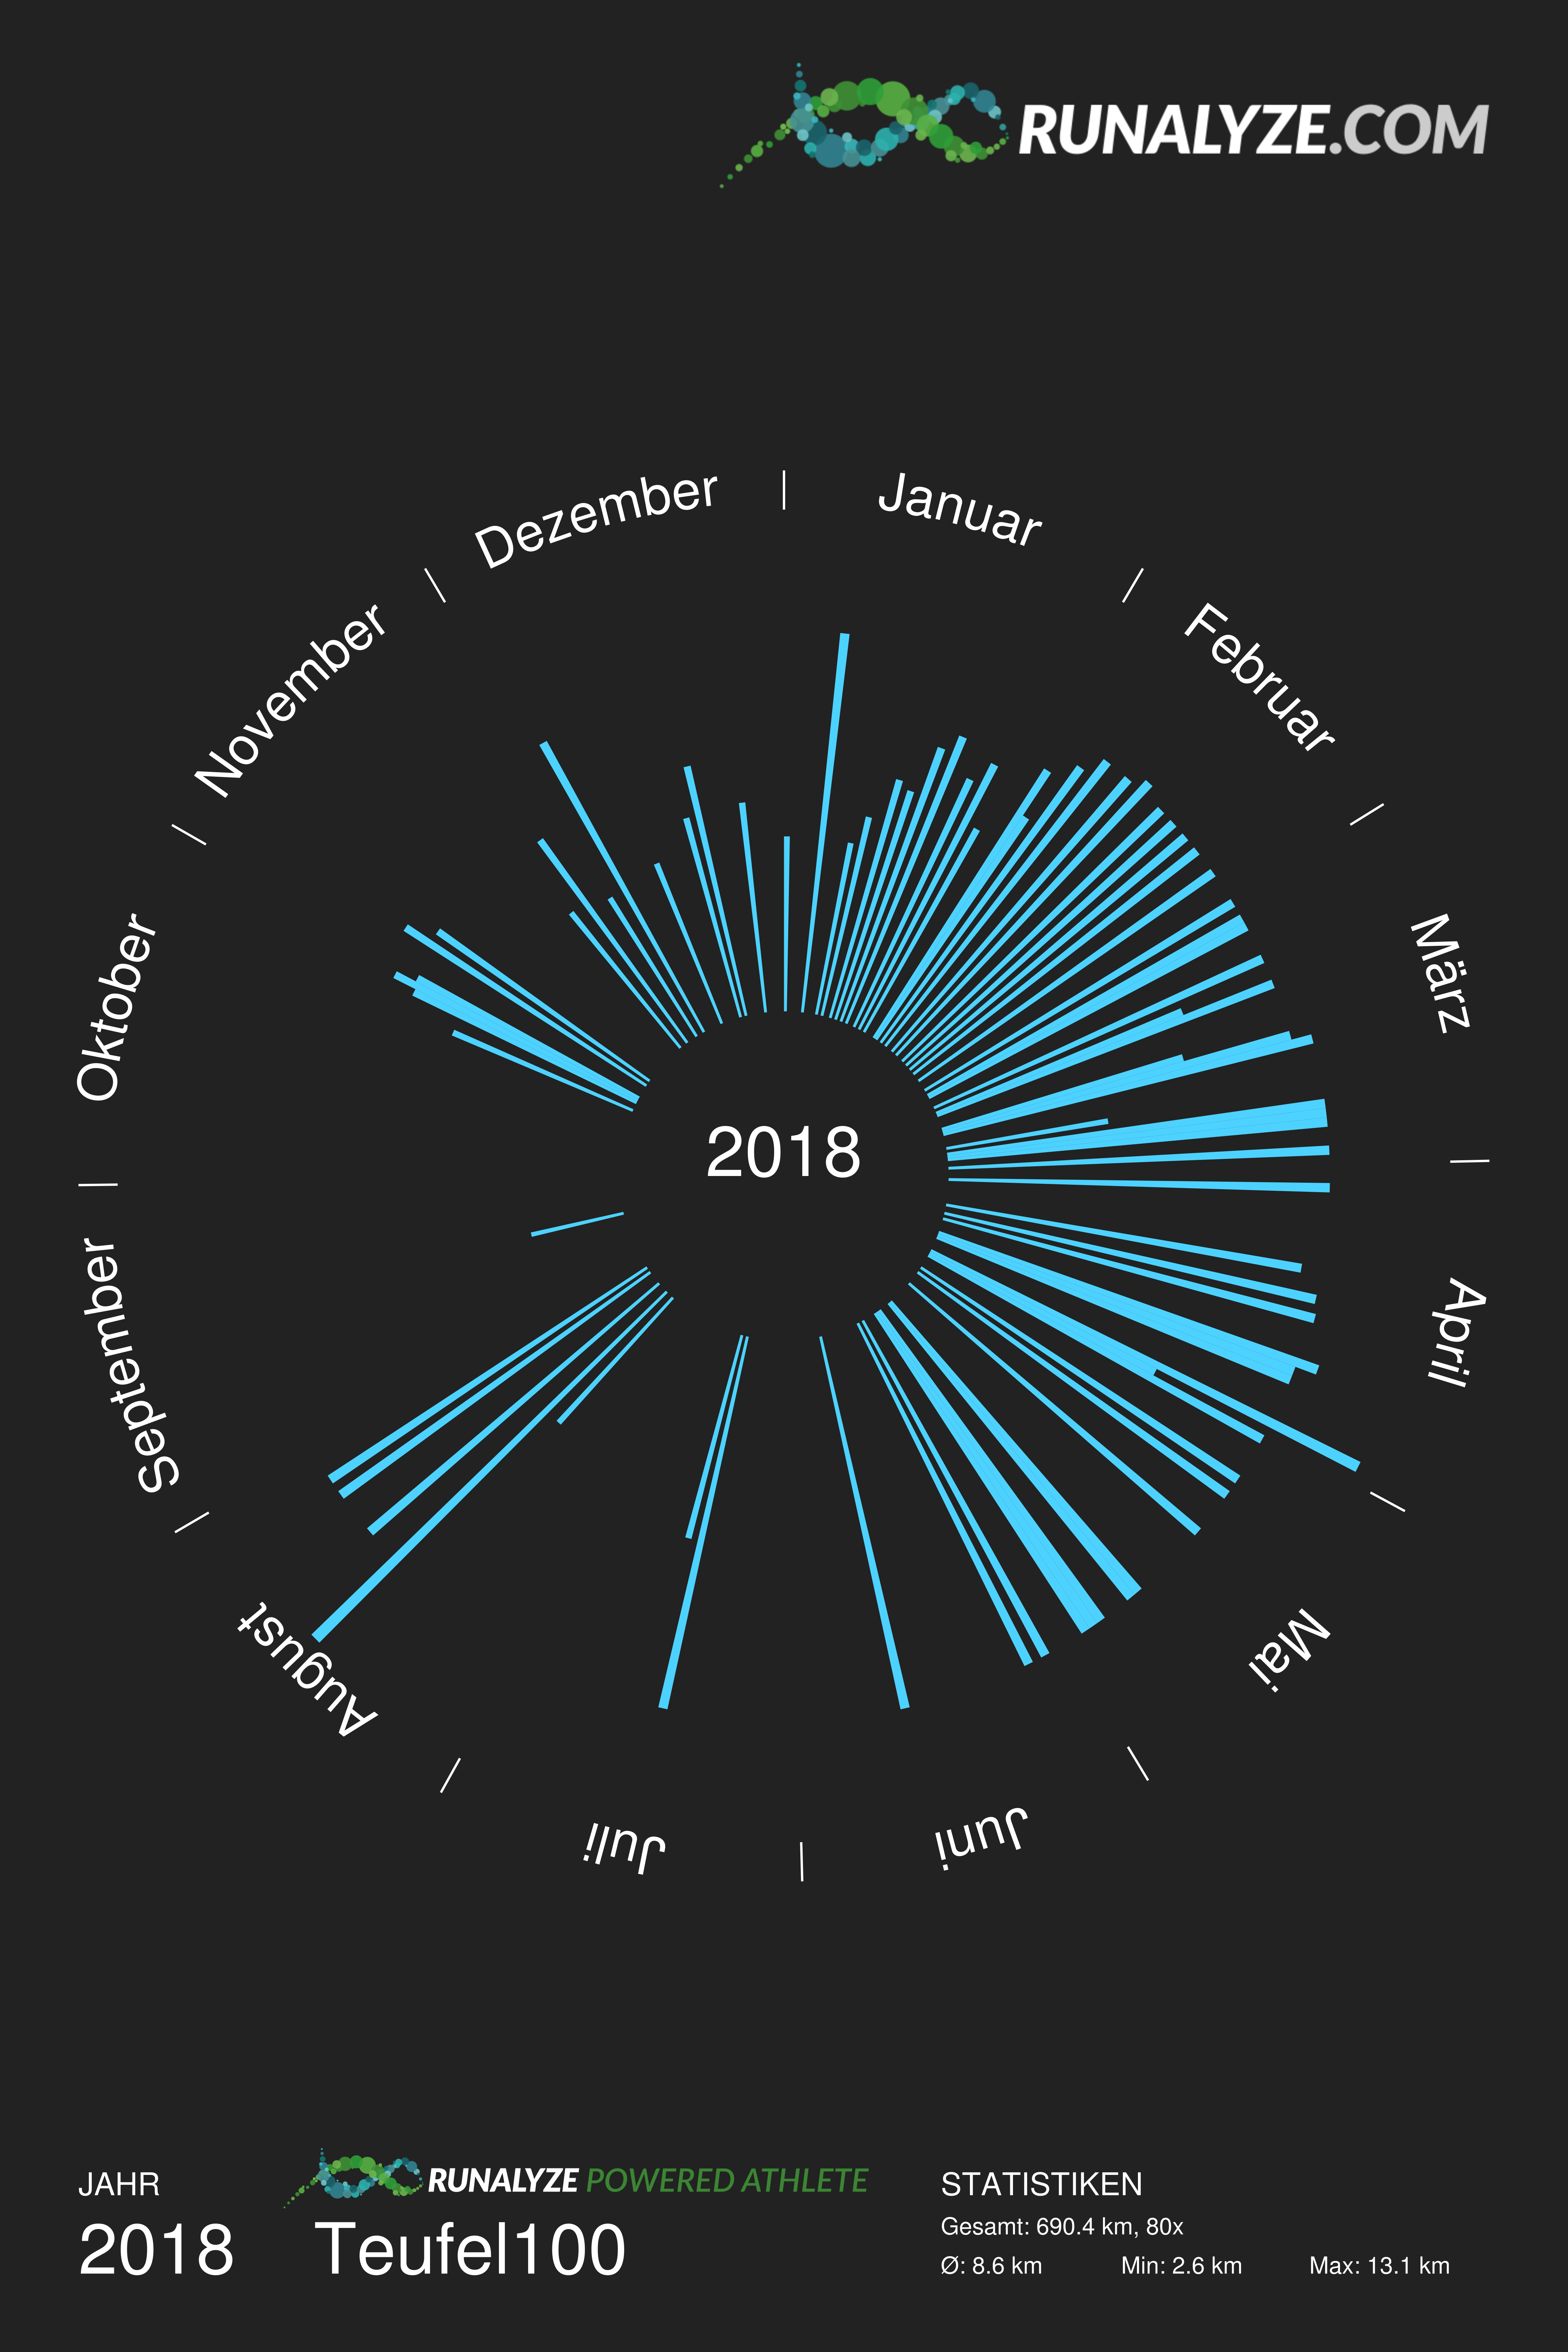 Grafik mit allen Laeufen aus dem Jahr 2018